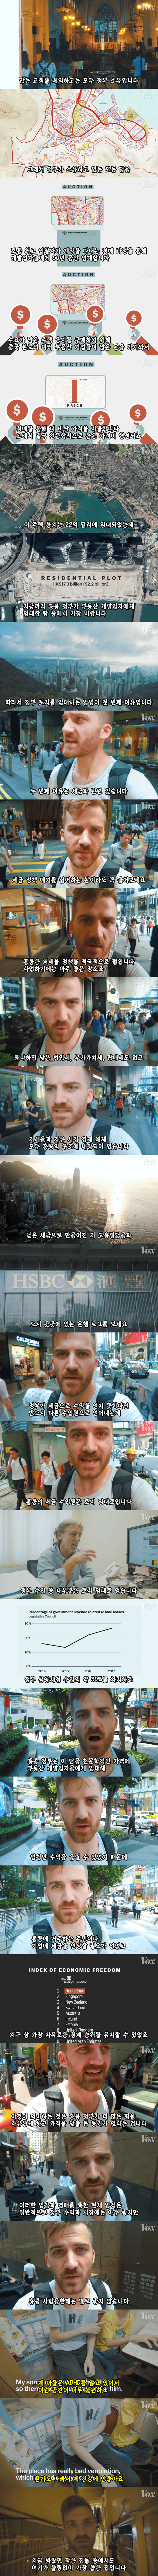 홍콩의 새장 속3.png